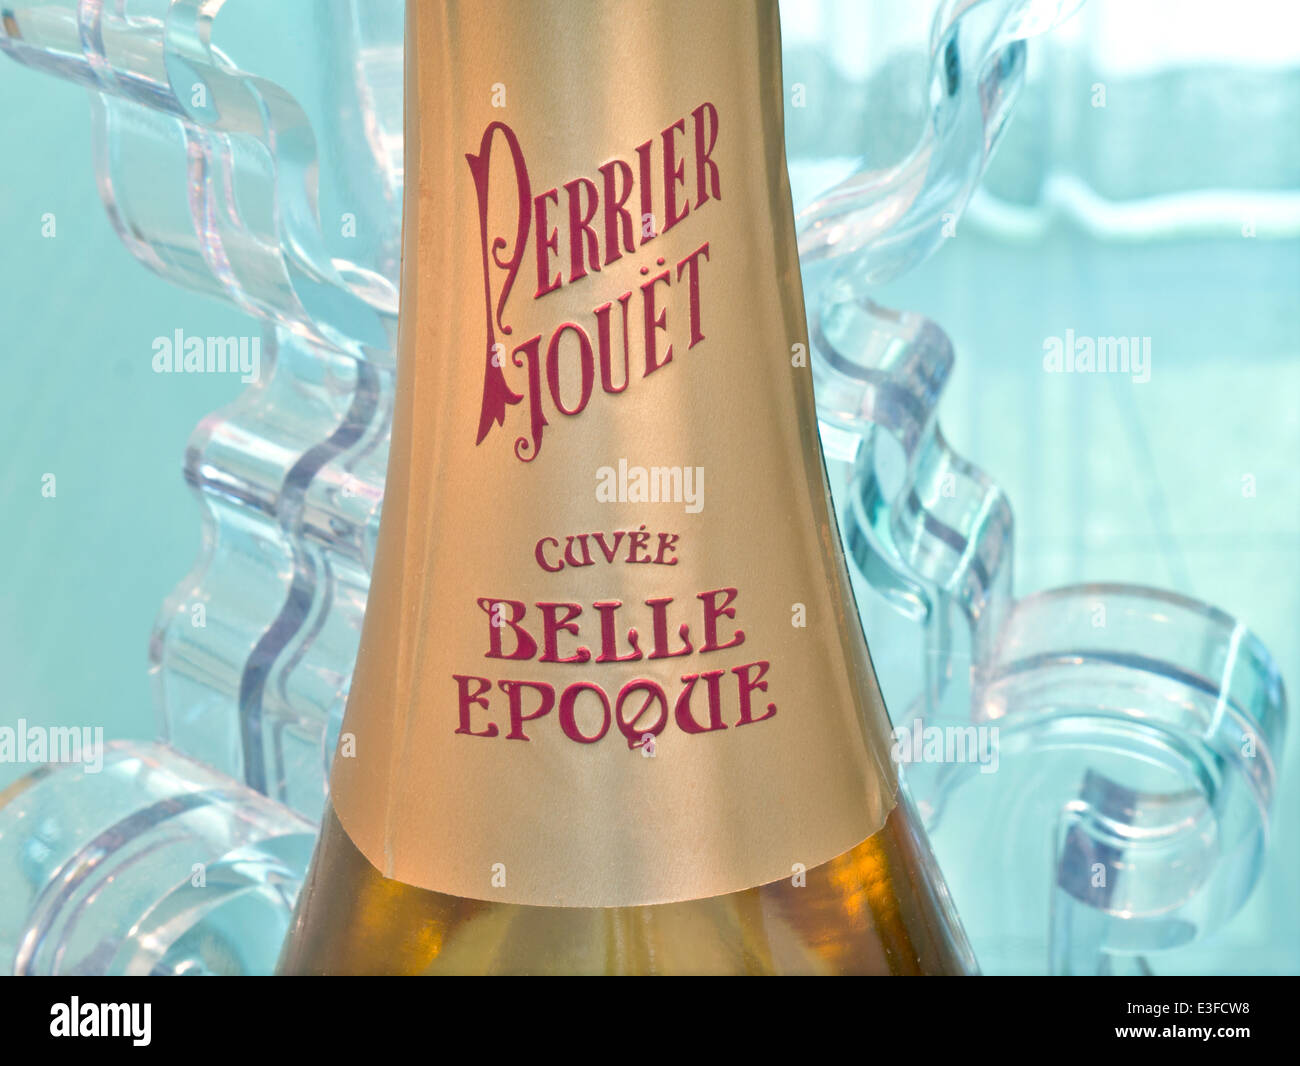 Belle EPOQUE Perrier Jouet coupe Belle Epoque bouteille de champagne de luxe dans un cadre raffiné au bar à manger Banque D'Images